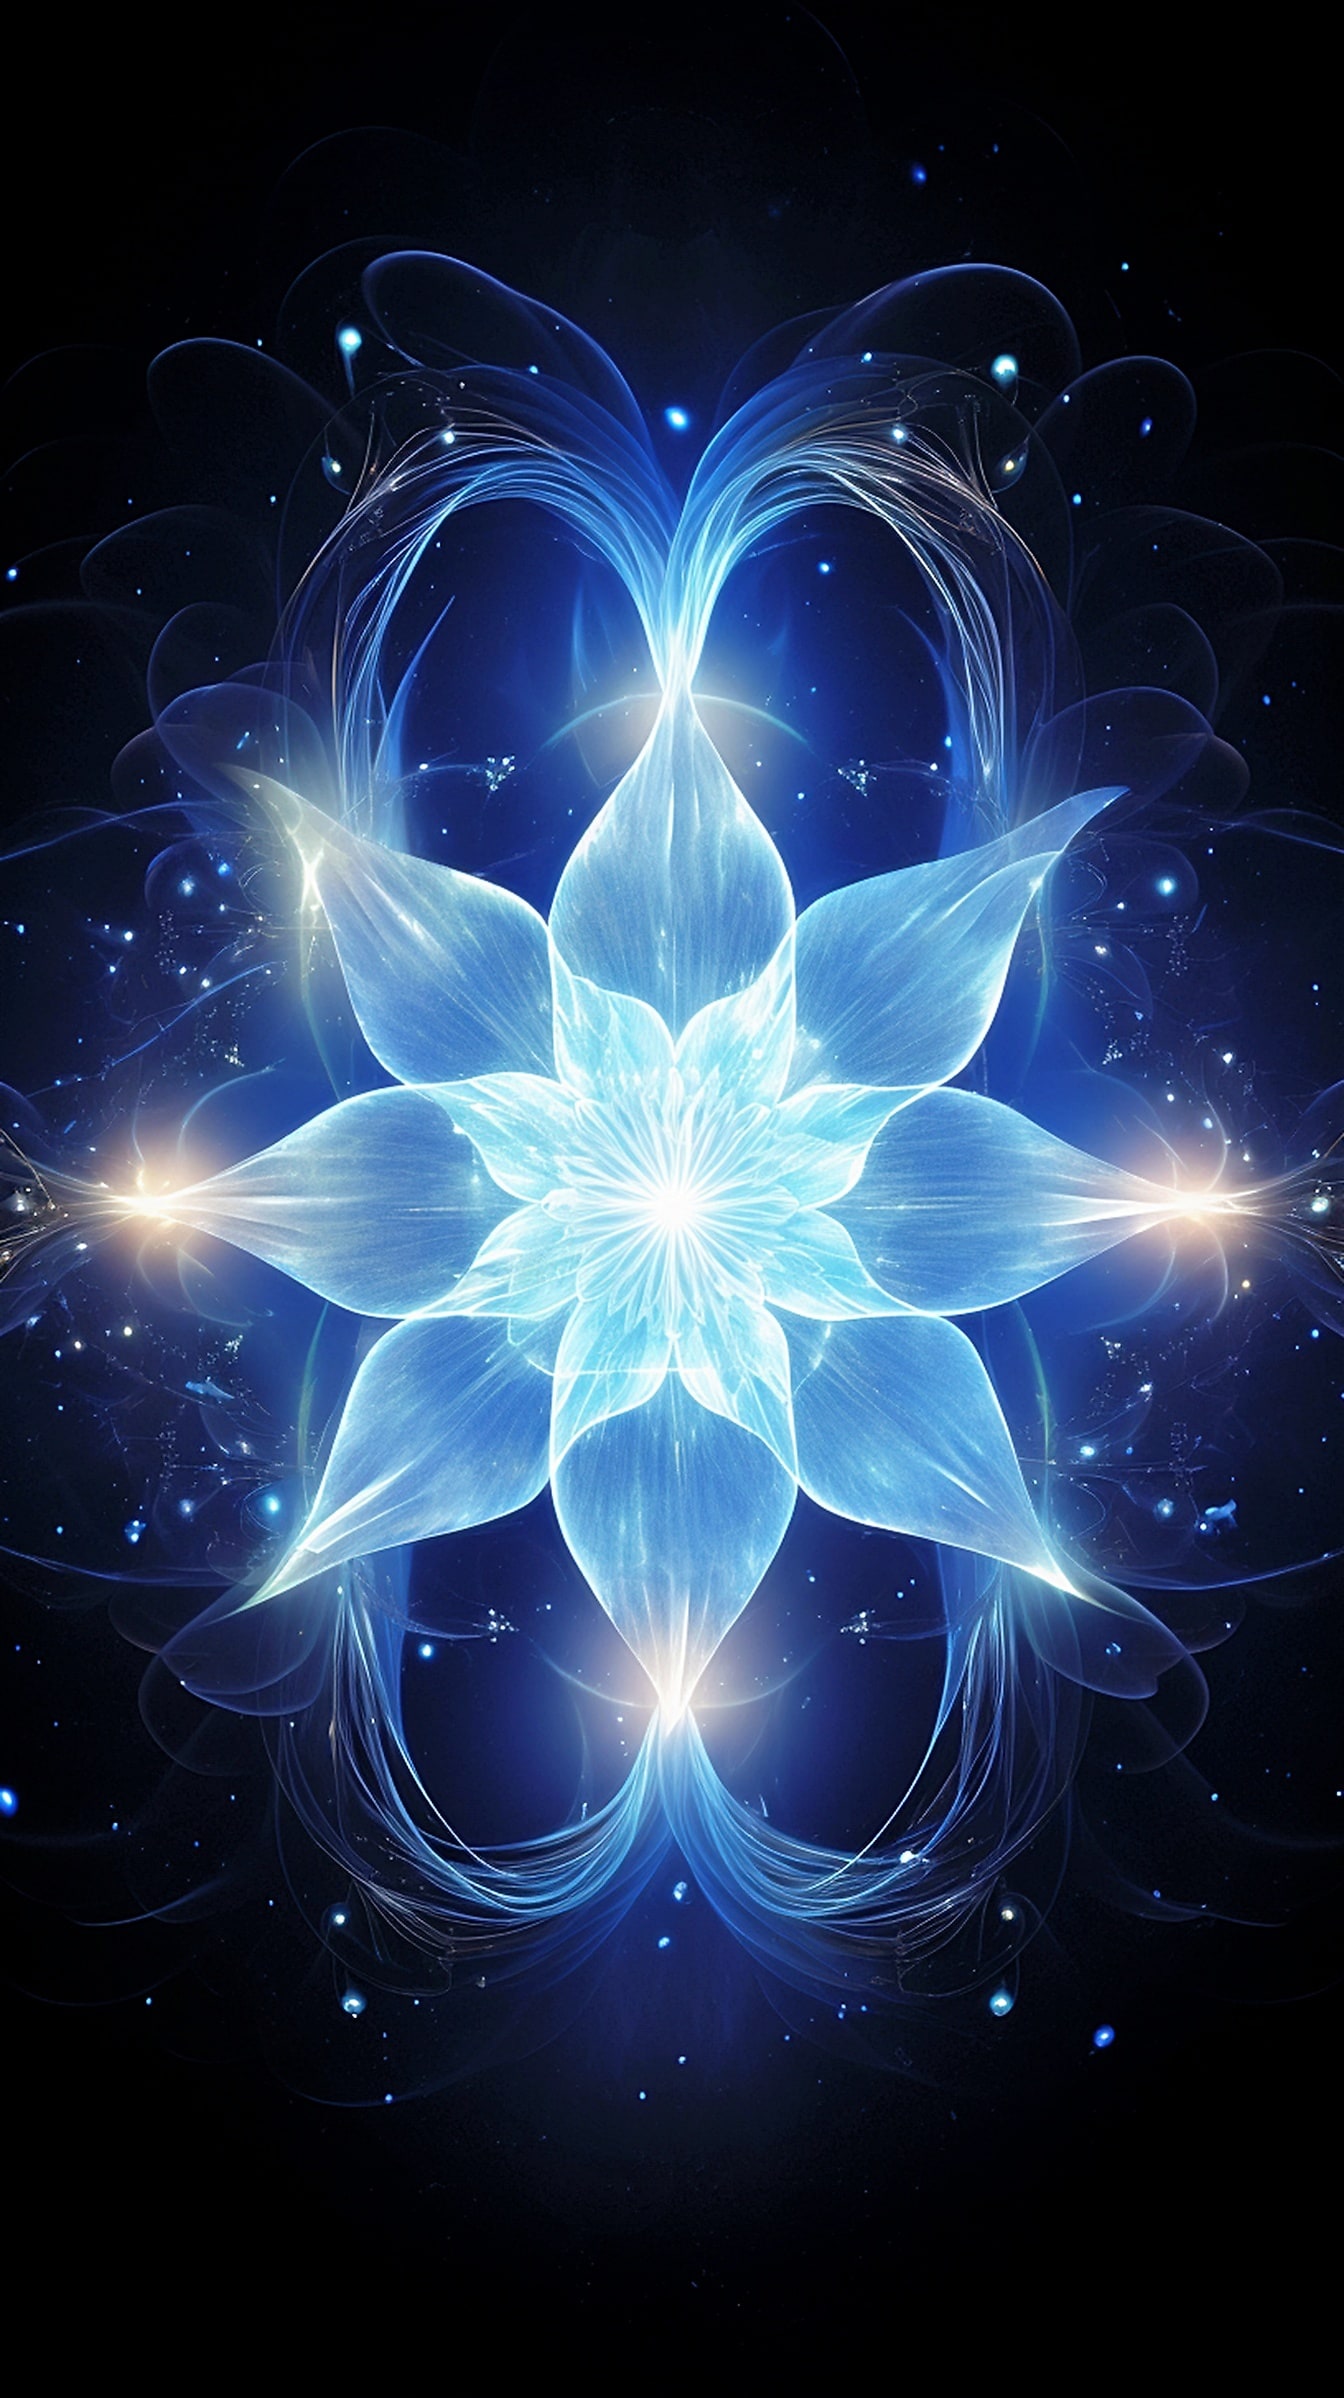 Surrealistická ilustrácia žiariaceho modrého kvetu s bielym svetlom na čiernom pozadí